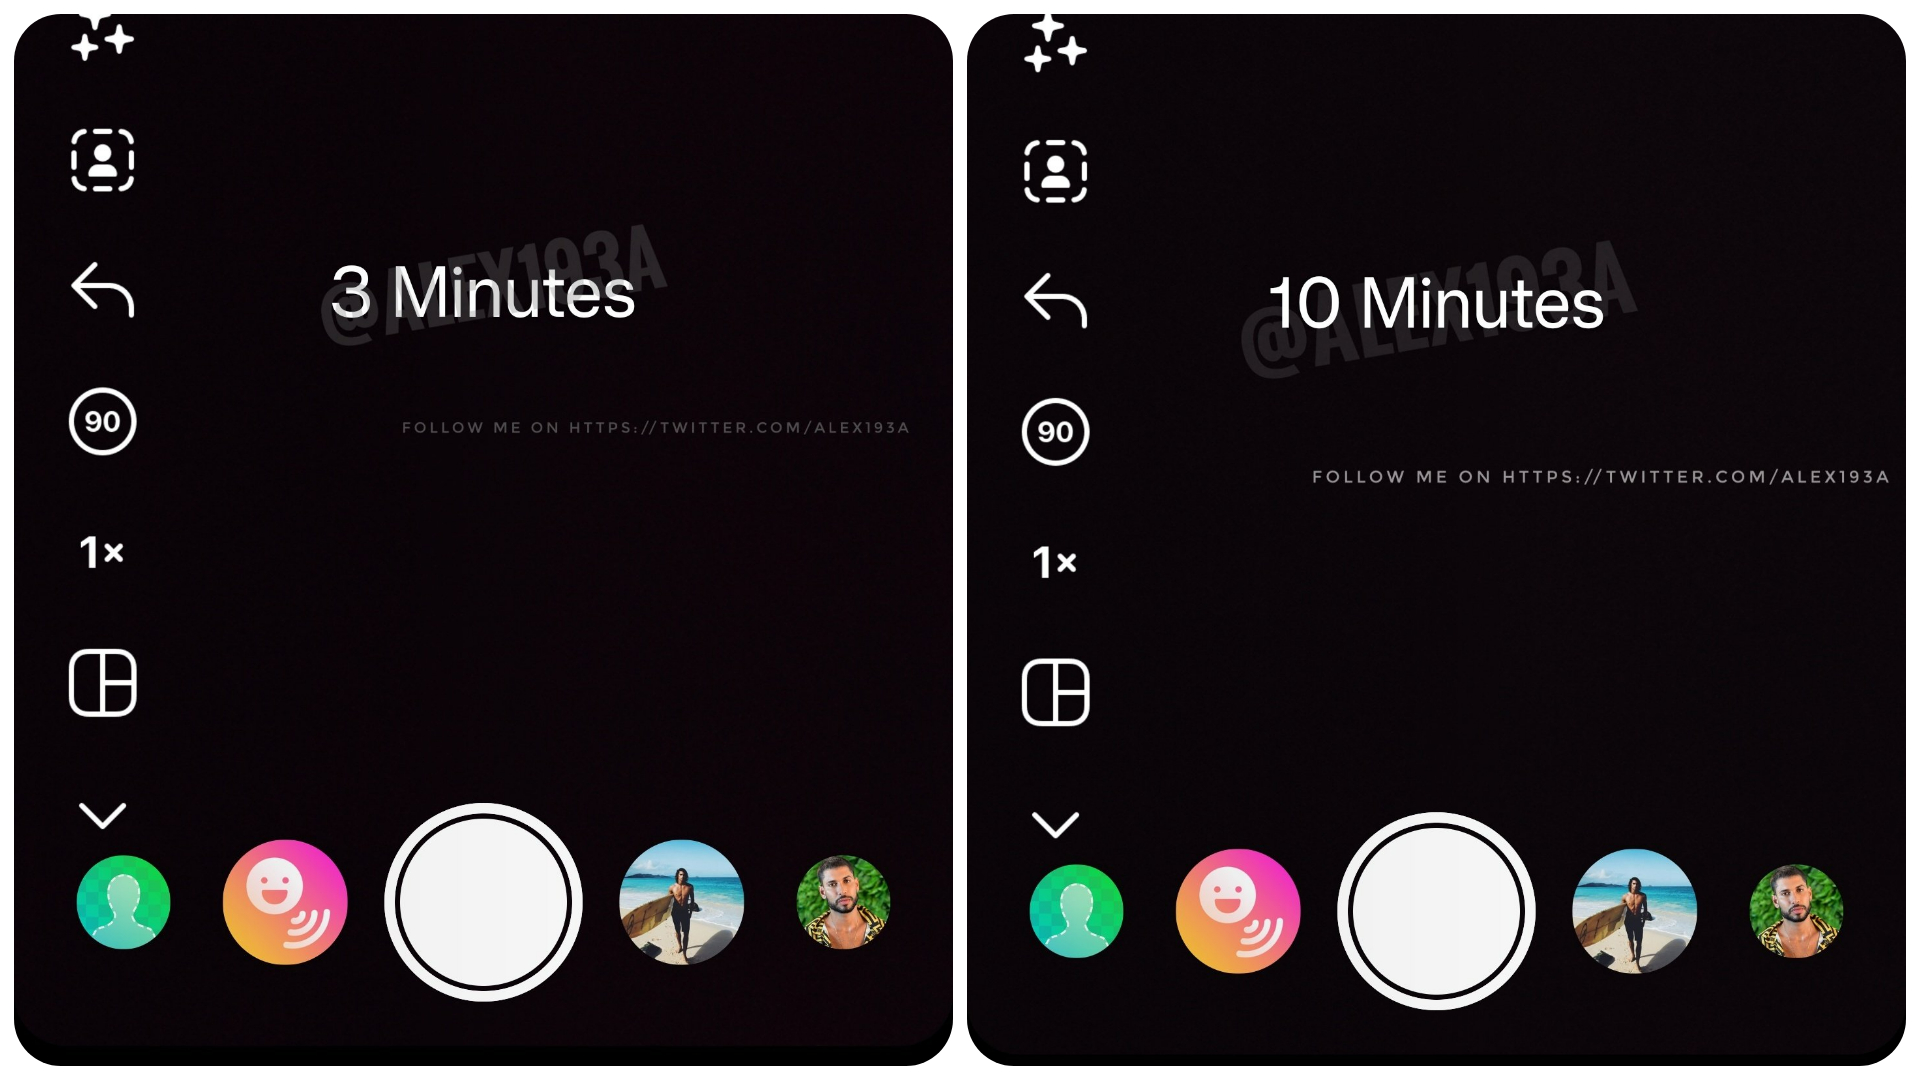 Imagens confirmam teste que eleva a duração de vídeos do Instagram Reels para 10 minutos